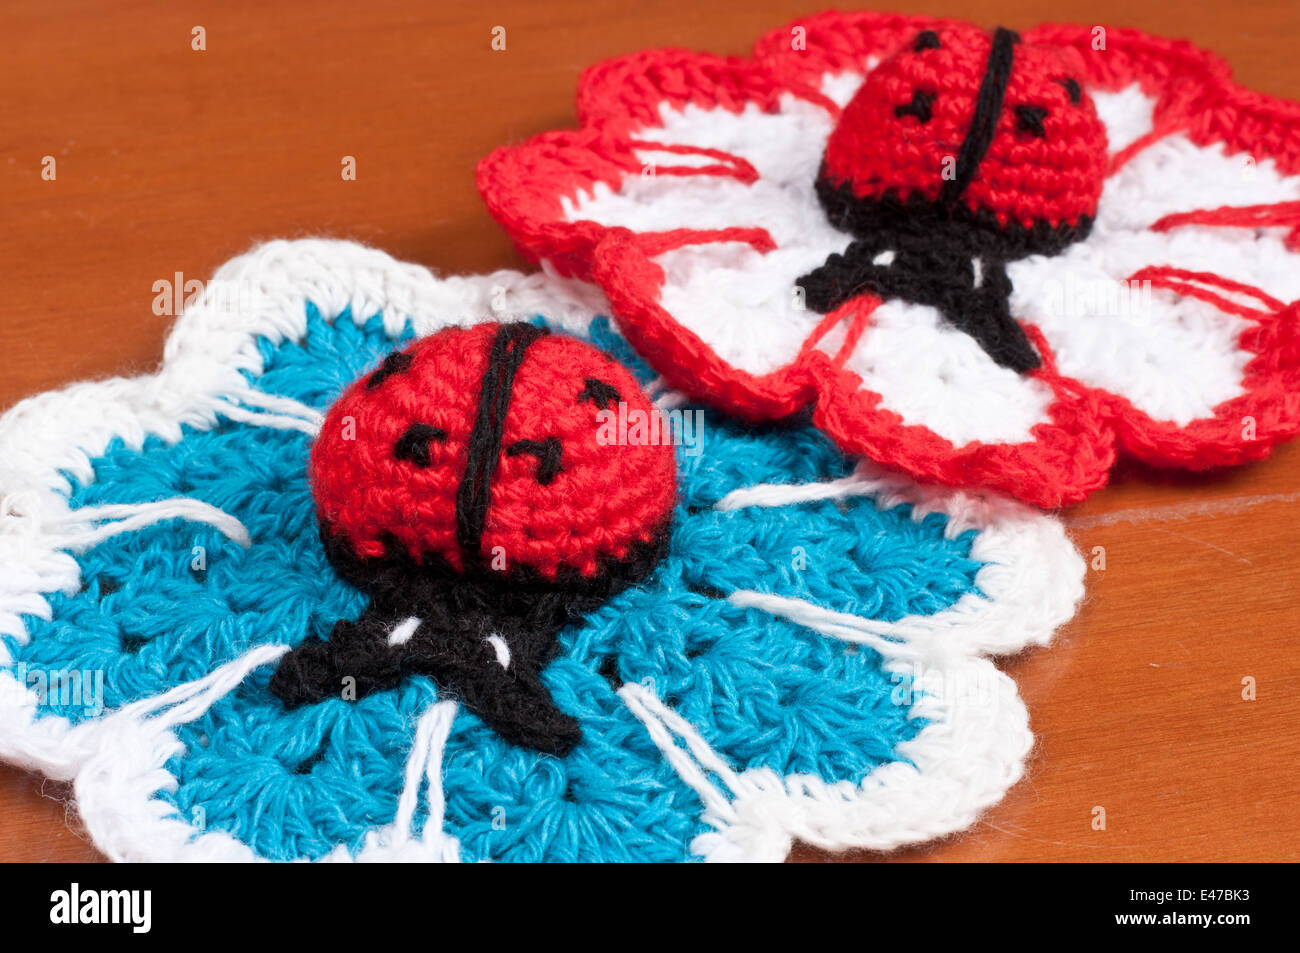 El trabajo a mano servilletas de tejer crochet aficiones flor barra aguja dios insecto mariquita con hilos de lana ninguno artesanía needlewor blanco azul rojo Foto de stock